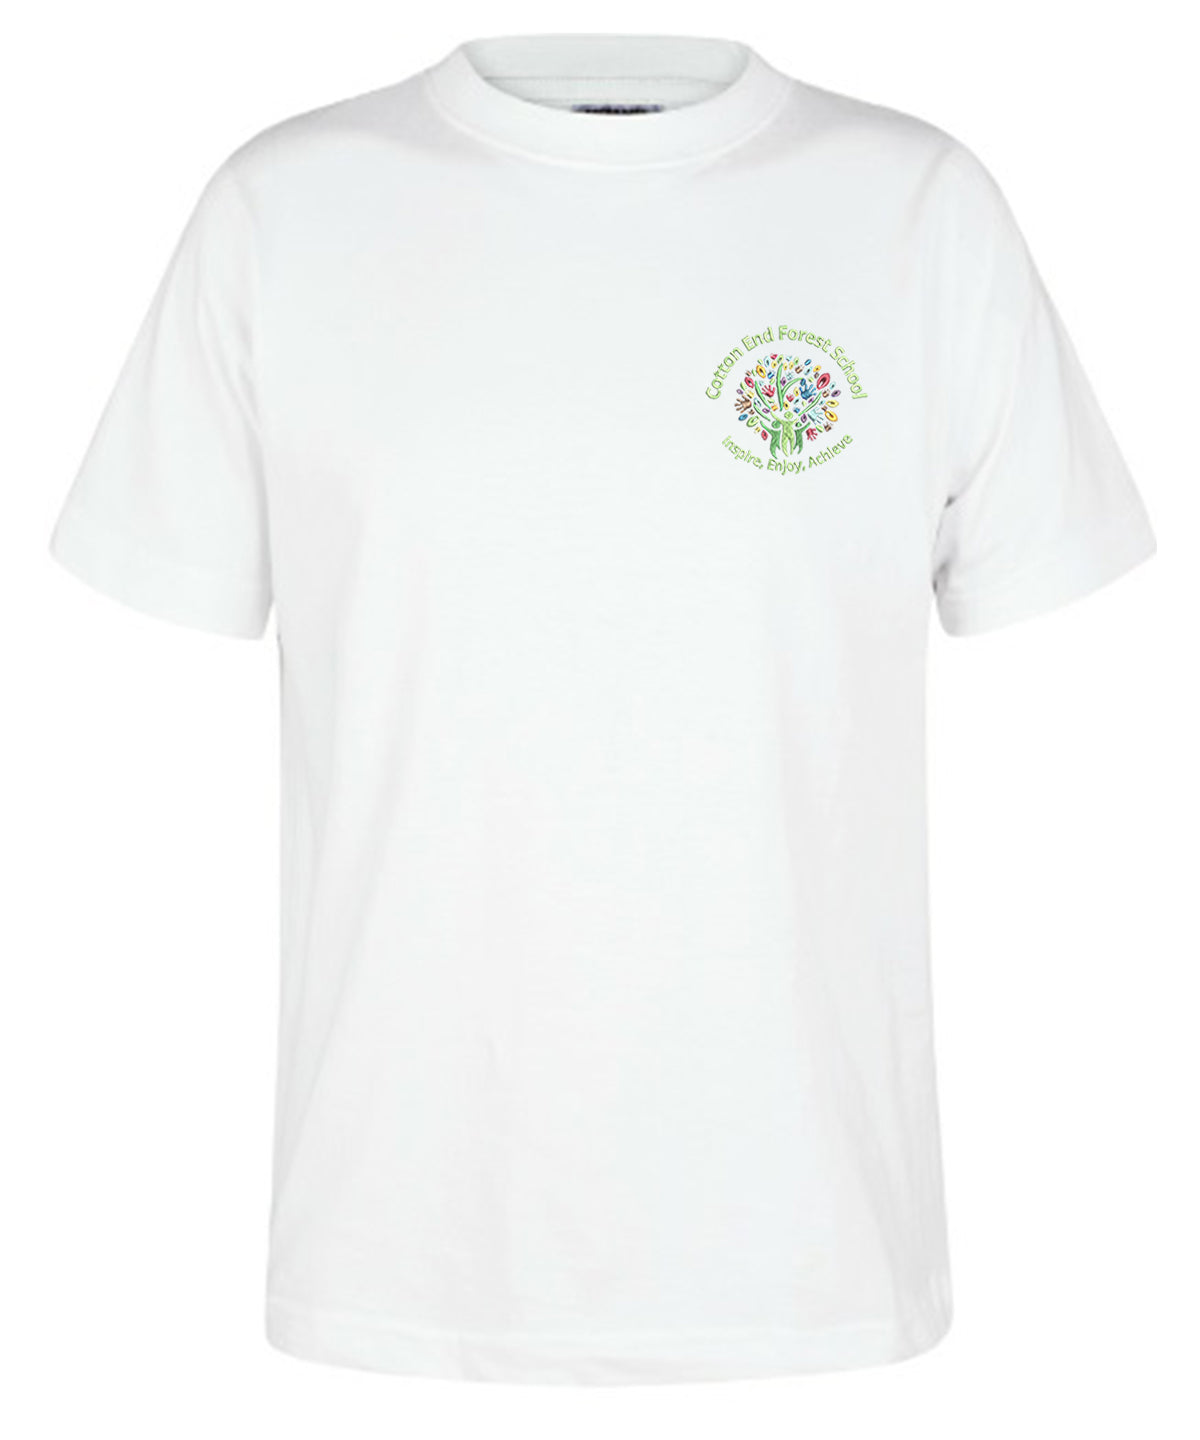 Cotton End Forest School - Unisex T-Shirt - School Uniform Shop